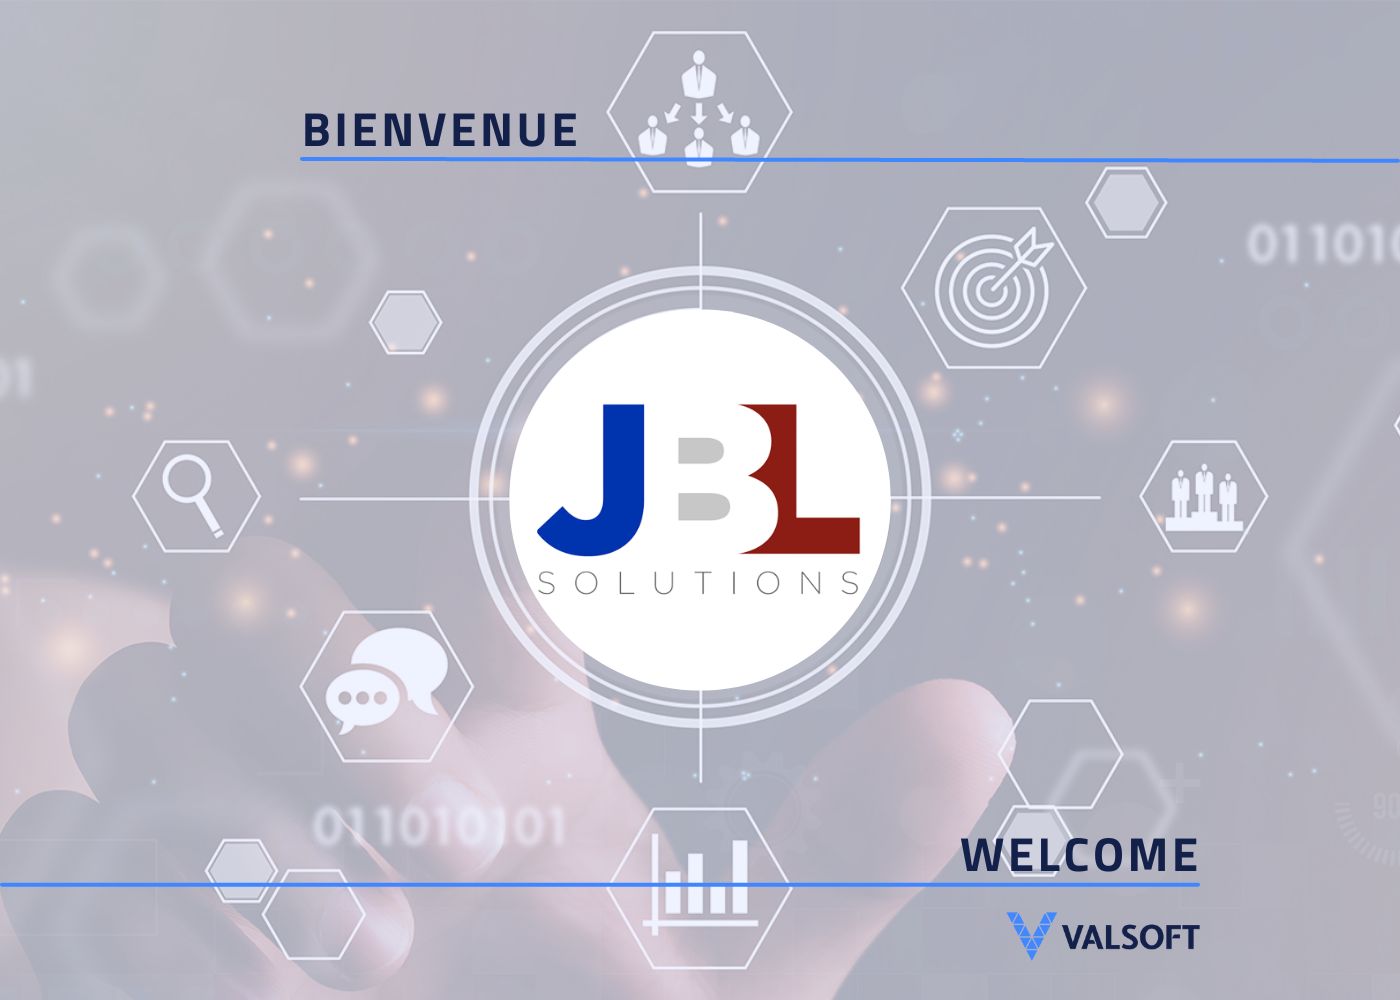 JBL - Acquisitions